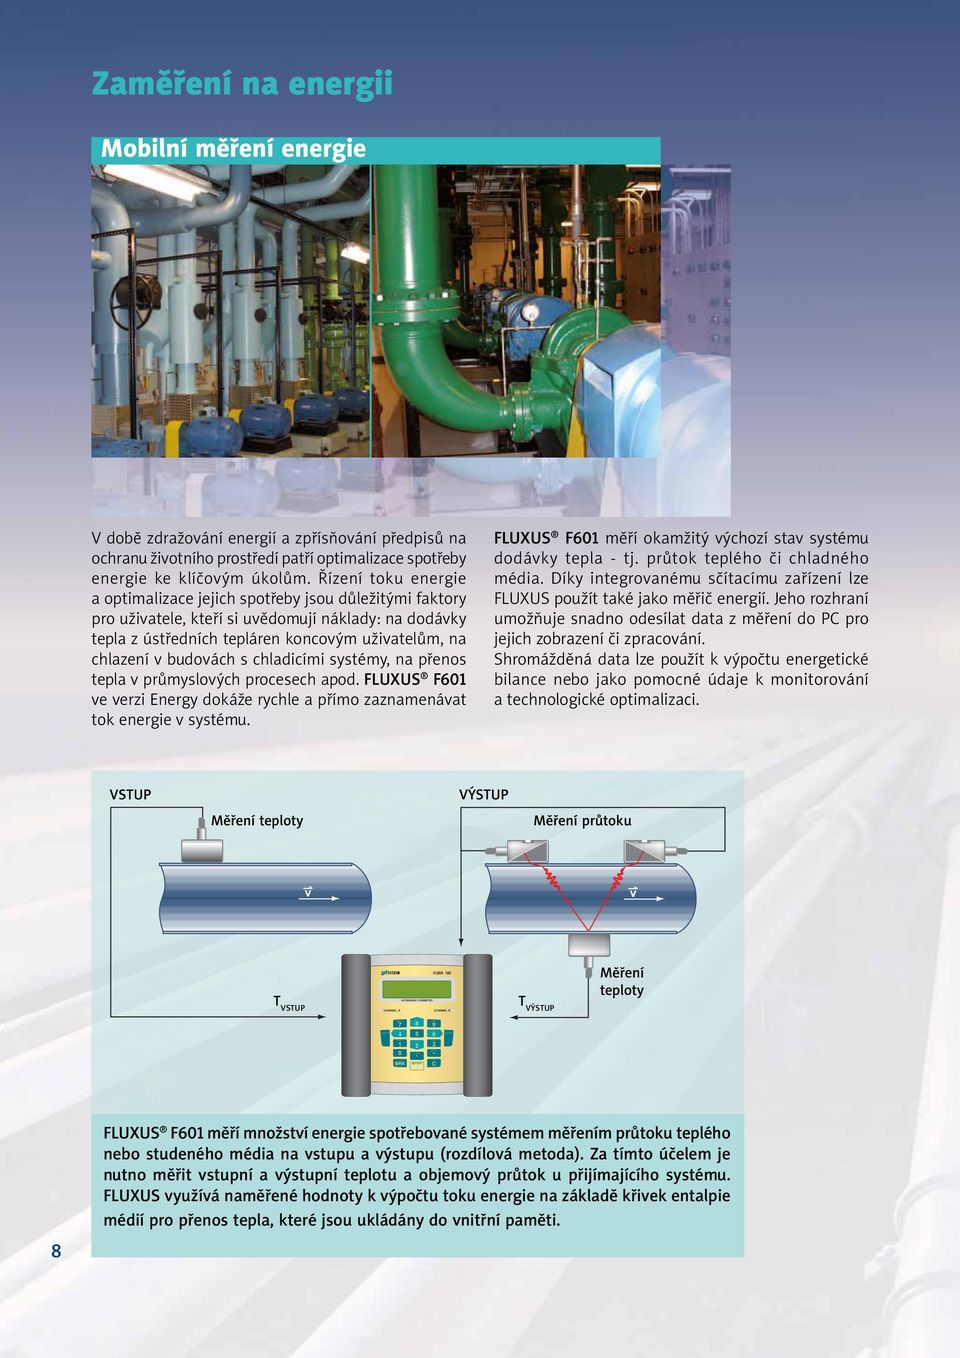 budovách s chladicími systémy, na přenos tepla v průmyslových procesech apod. FLUXUS F601 ve verzi Energy dokáže rychle a přímo zaznamenávat tok energie v systému.